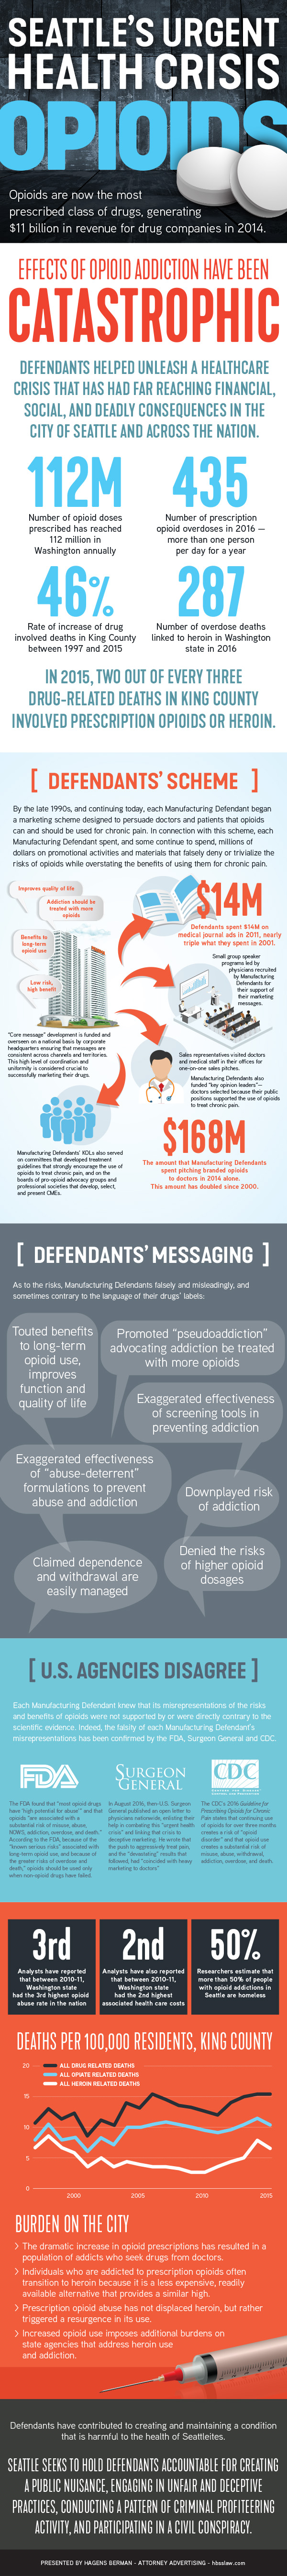 Hagens Berman Seattle Opioids infographic